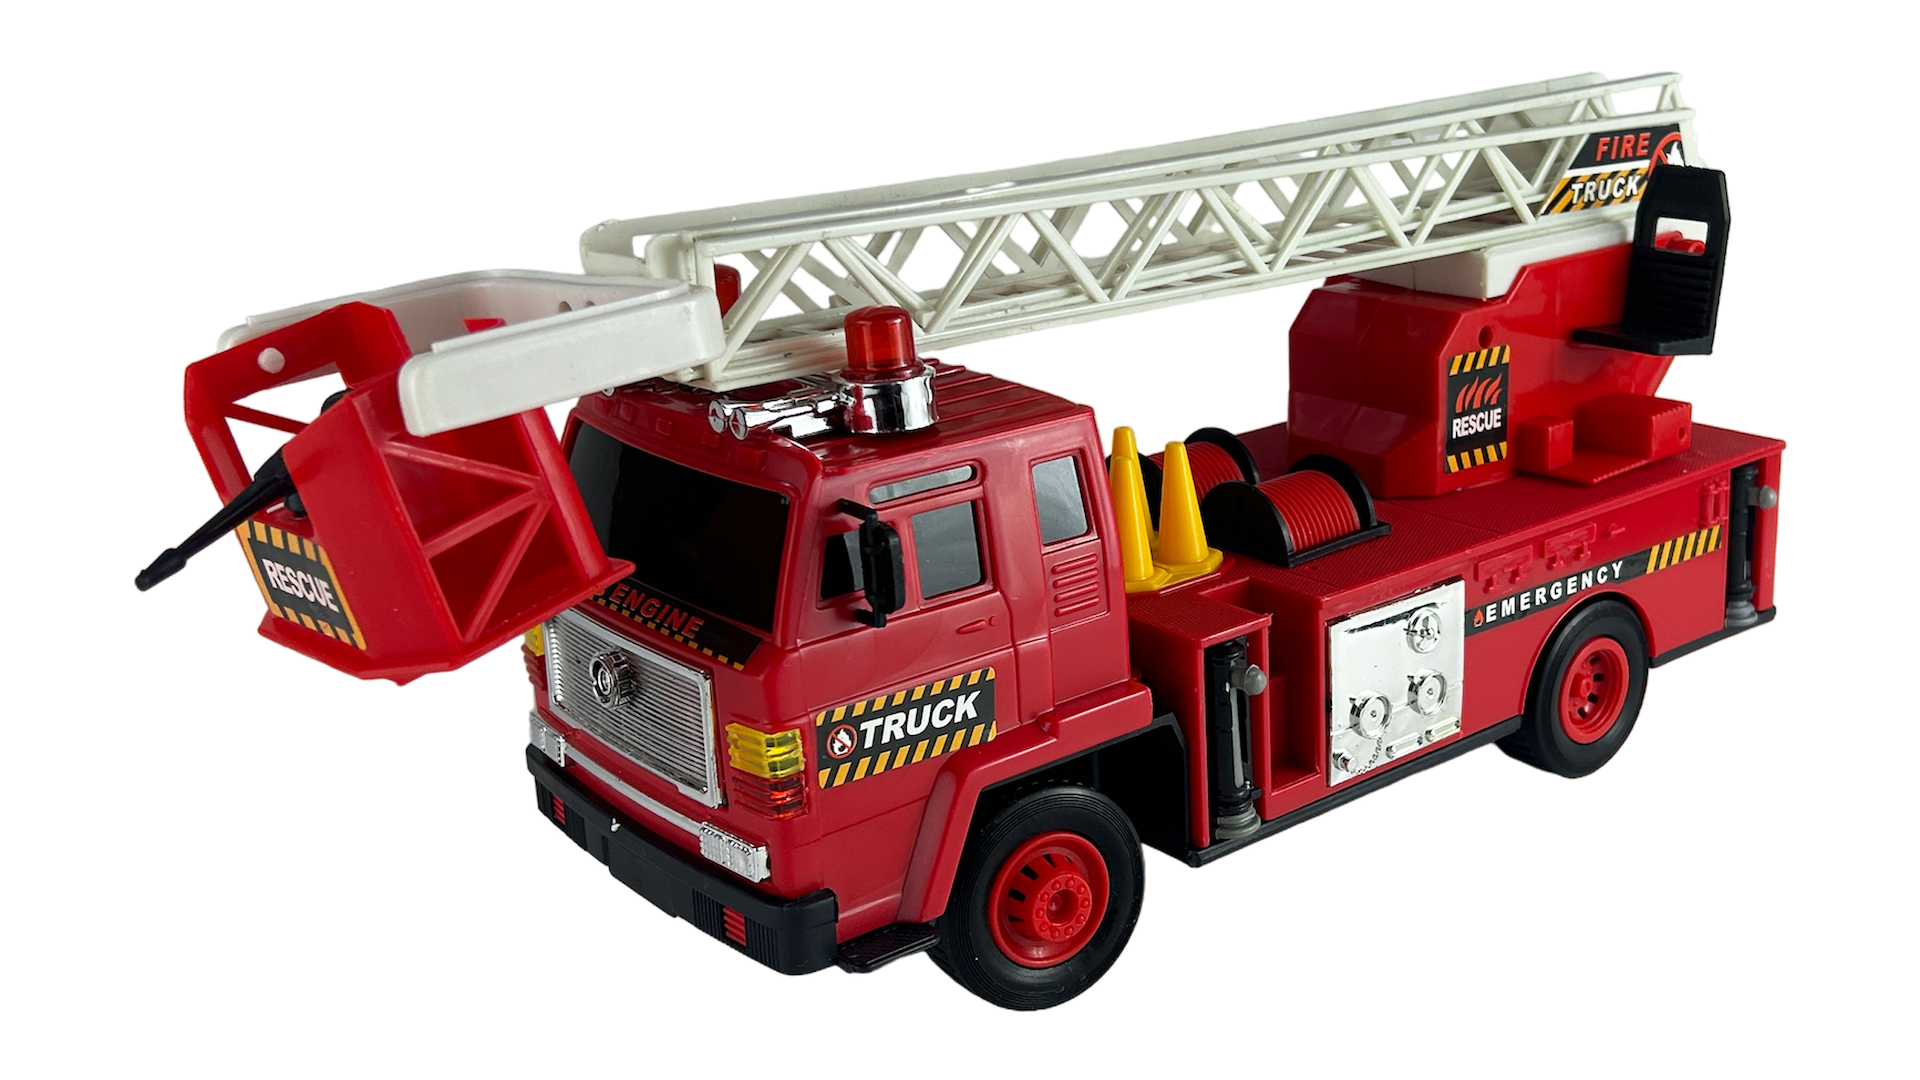 Радиоуправляемая Пожарная Машина Rui Feng на п/у Fire Engine Truck 27Mhz радиоуправляемая пожарная машина rui feng с подъемной площадкой r236